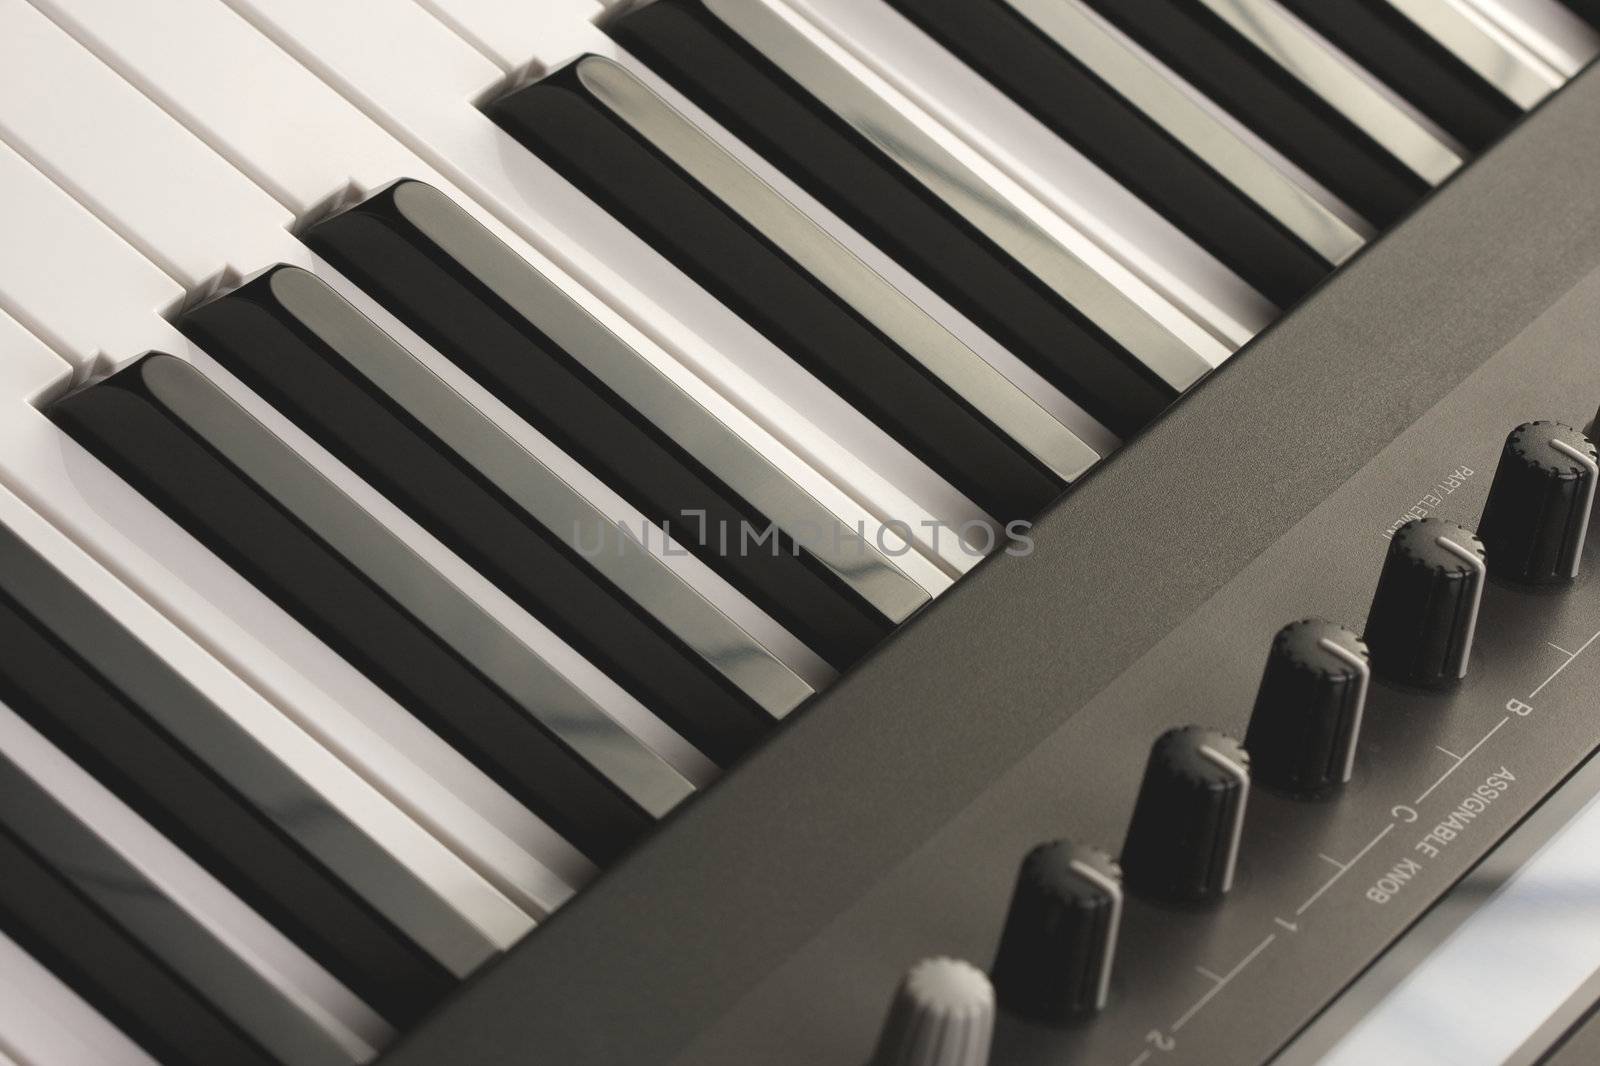 Abstraact Digital Piano Keyboard & Controls